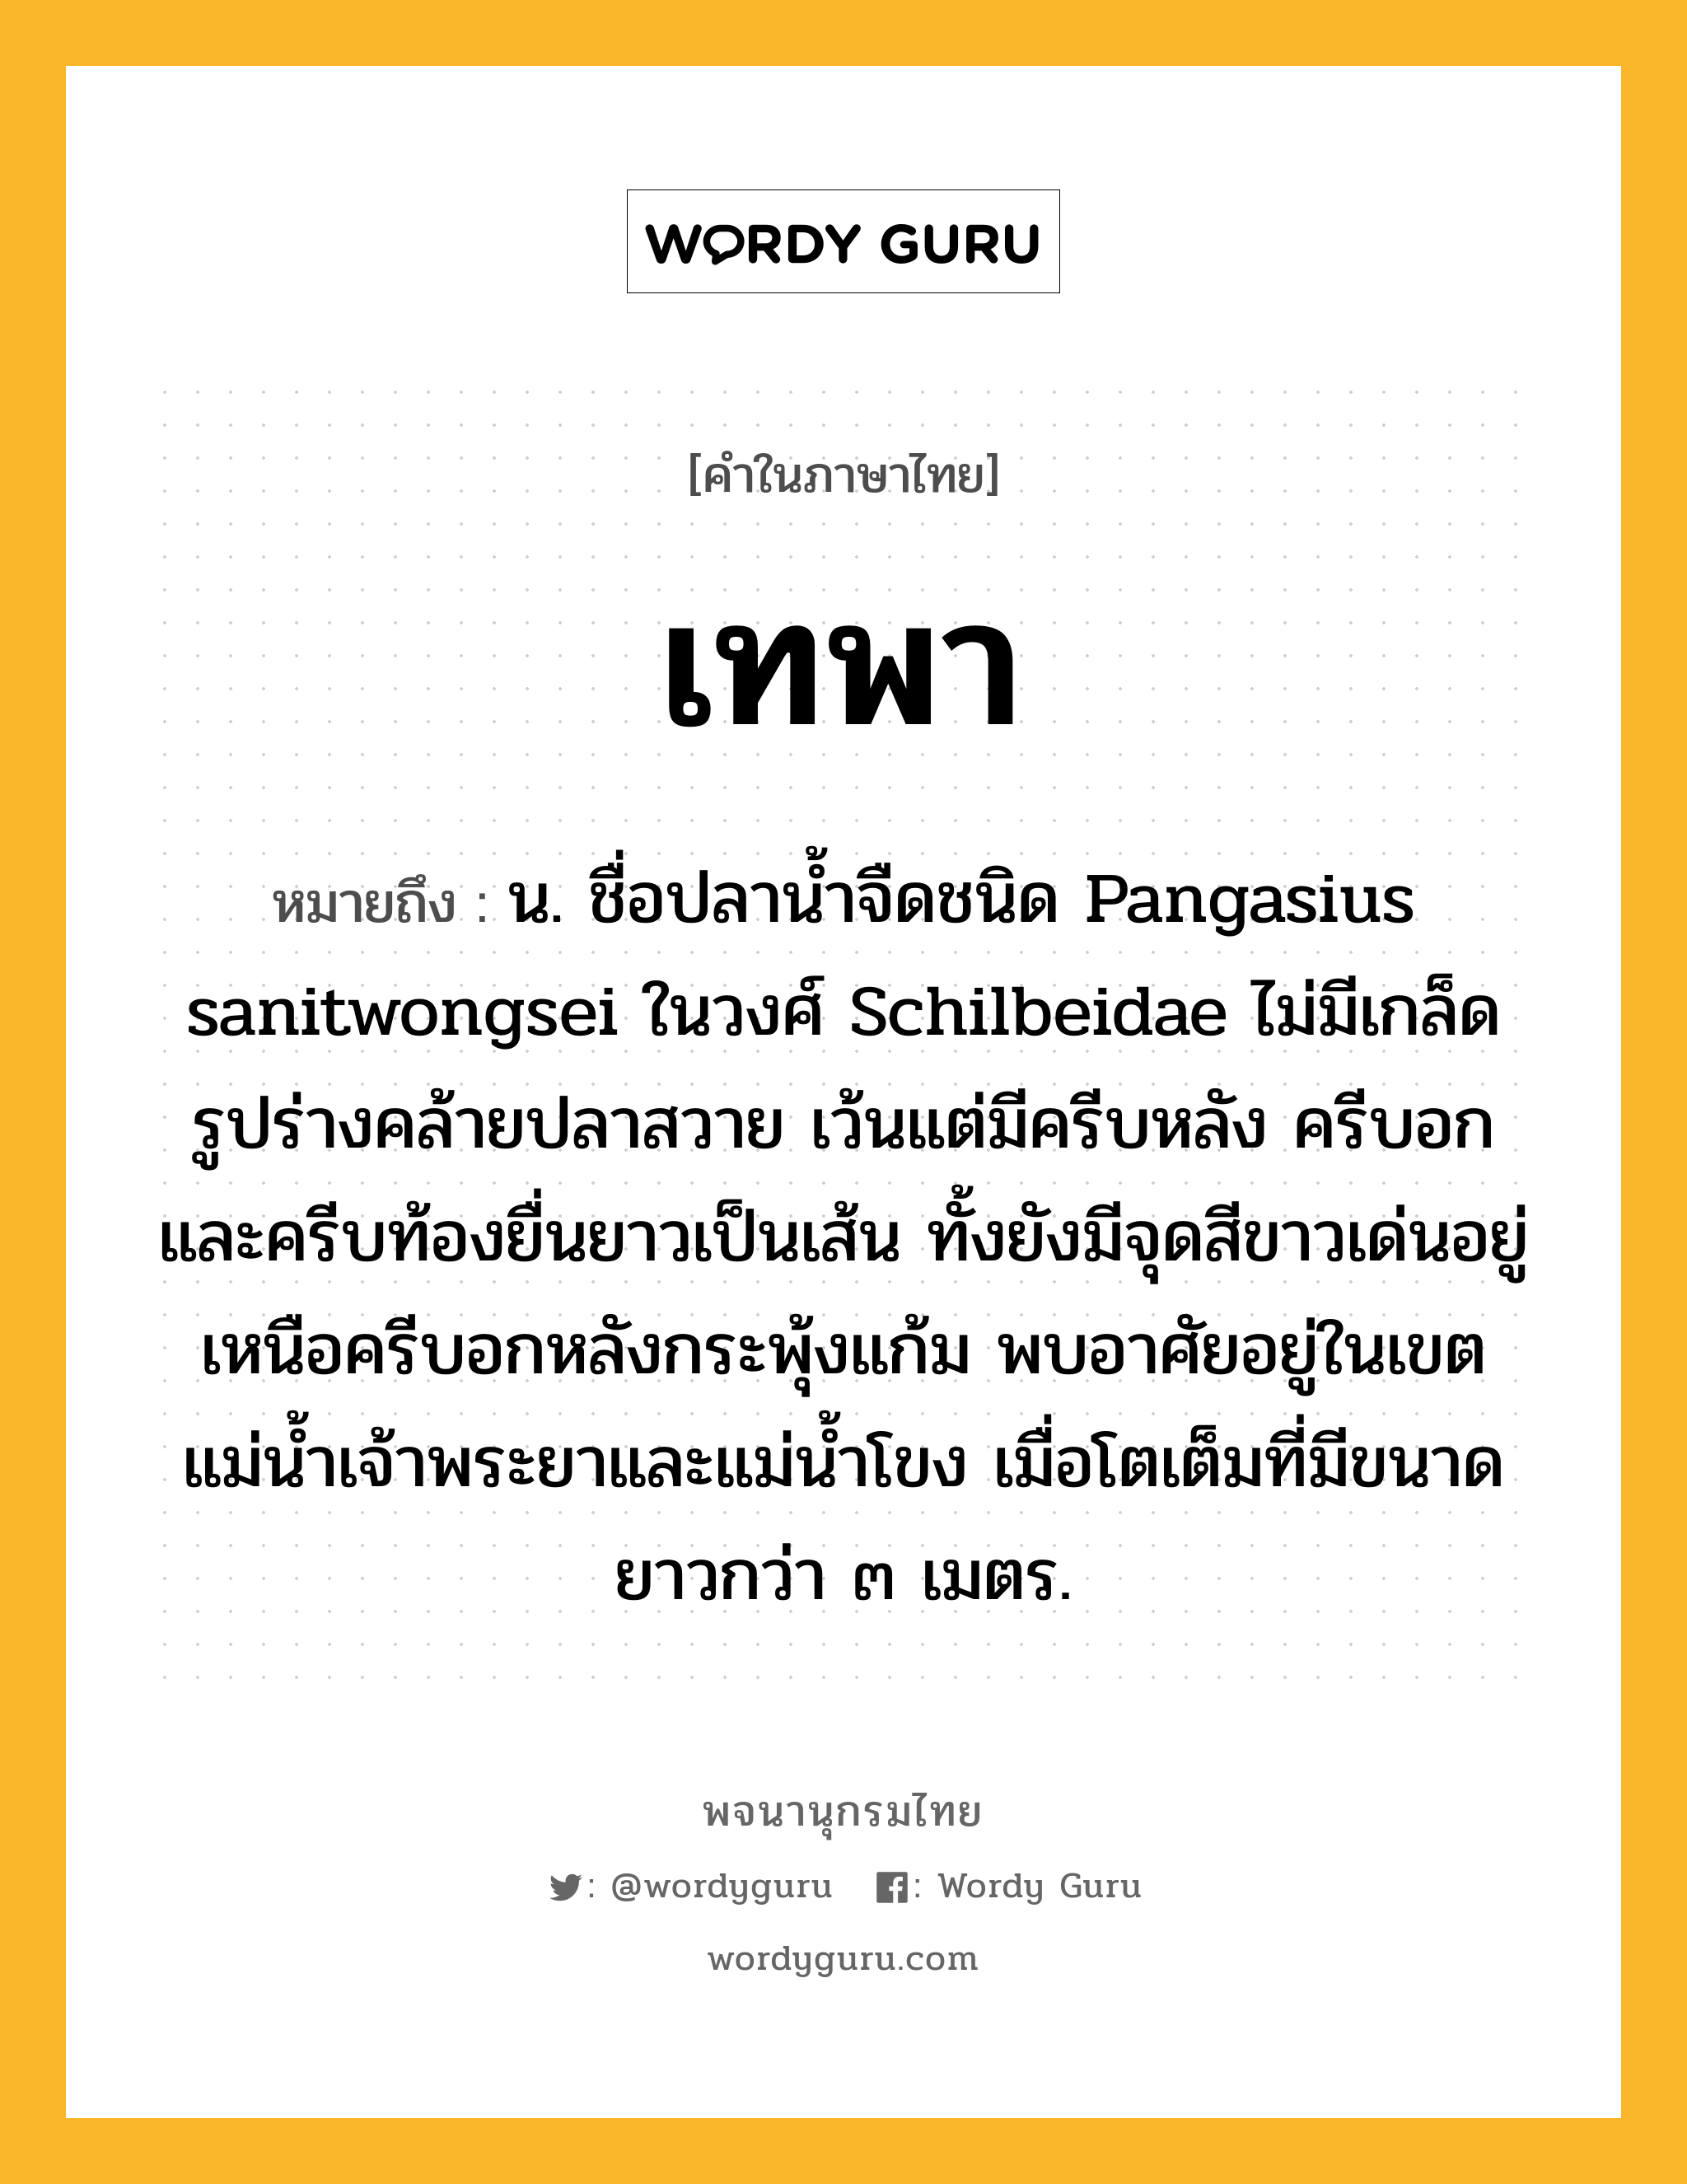 เทพา หมายถึงอะไร?, คำในภาษาไทย เทพา หมายถึง น. ชื่อปลานํ้าจืดชนิด Pangasius sanitwongsei ในวงศ์ Schilbeidae ไม่มีเกล็ด รูปร่างคล้ายปลาสวาย เว้นแต่มีครีบหลัง ครีบอก และครีบท้องยื่นยาวเป็นเส้น ทั้งยังมีจุดสีขาวเด่นอยู่เหนือครีบอกหลังกระพุ้งแก้ม พบอาศัยอยู่ในเขตแม่นํ้าเจ้าพระยาและแม่นํ้าโขง เมื่อโตเต็มที่มีขนาดยาวกว่า ๓ เมตร.